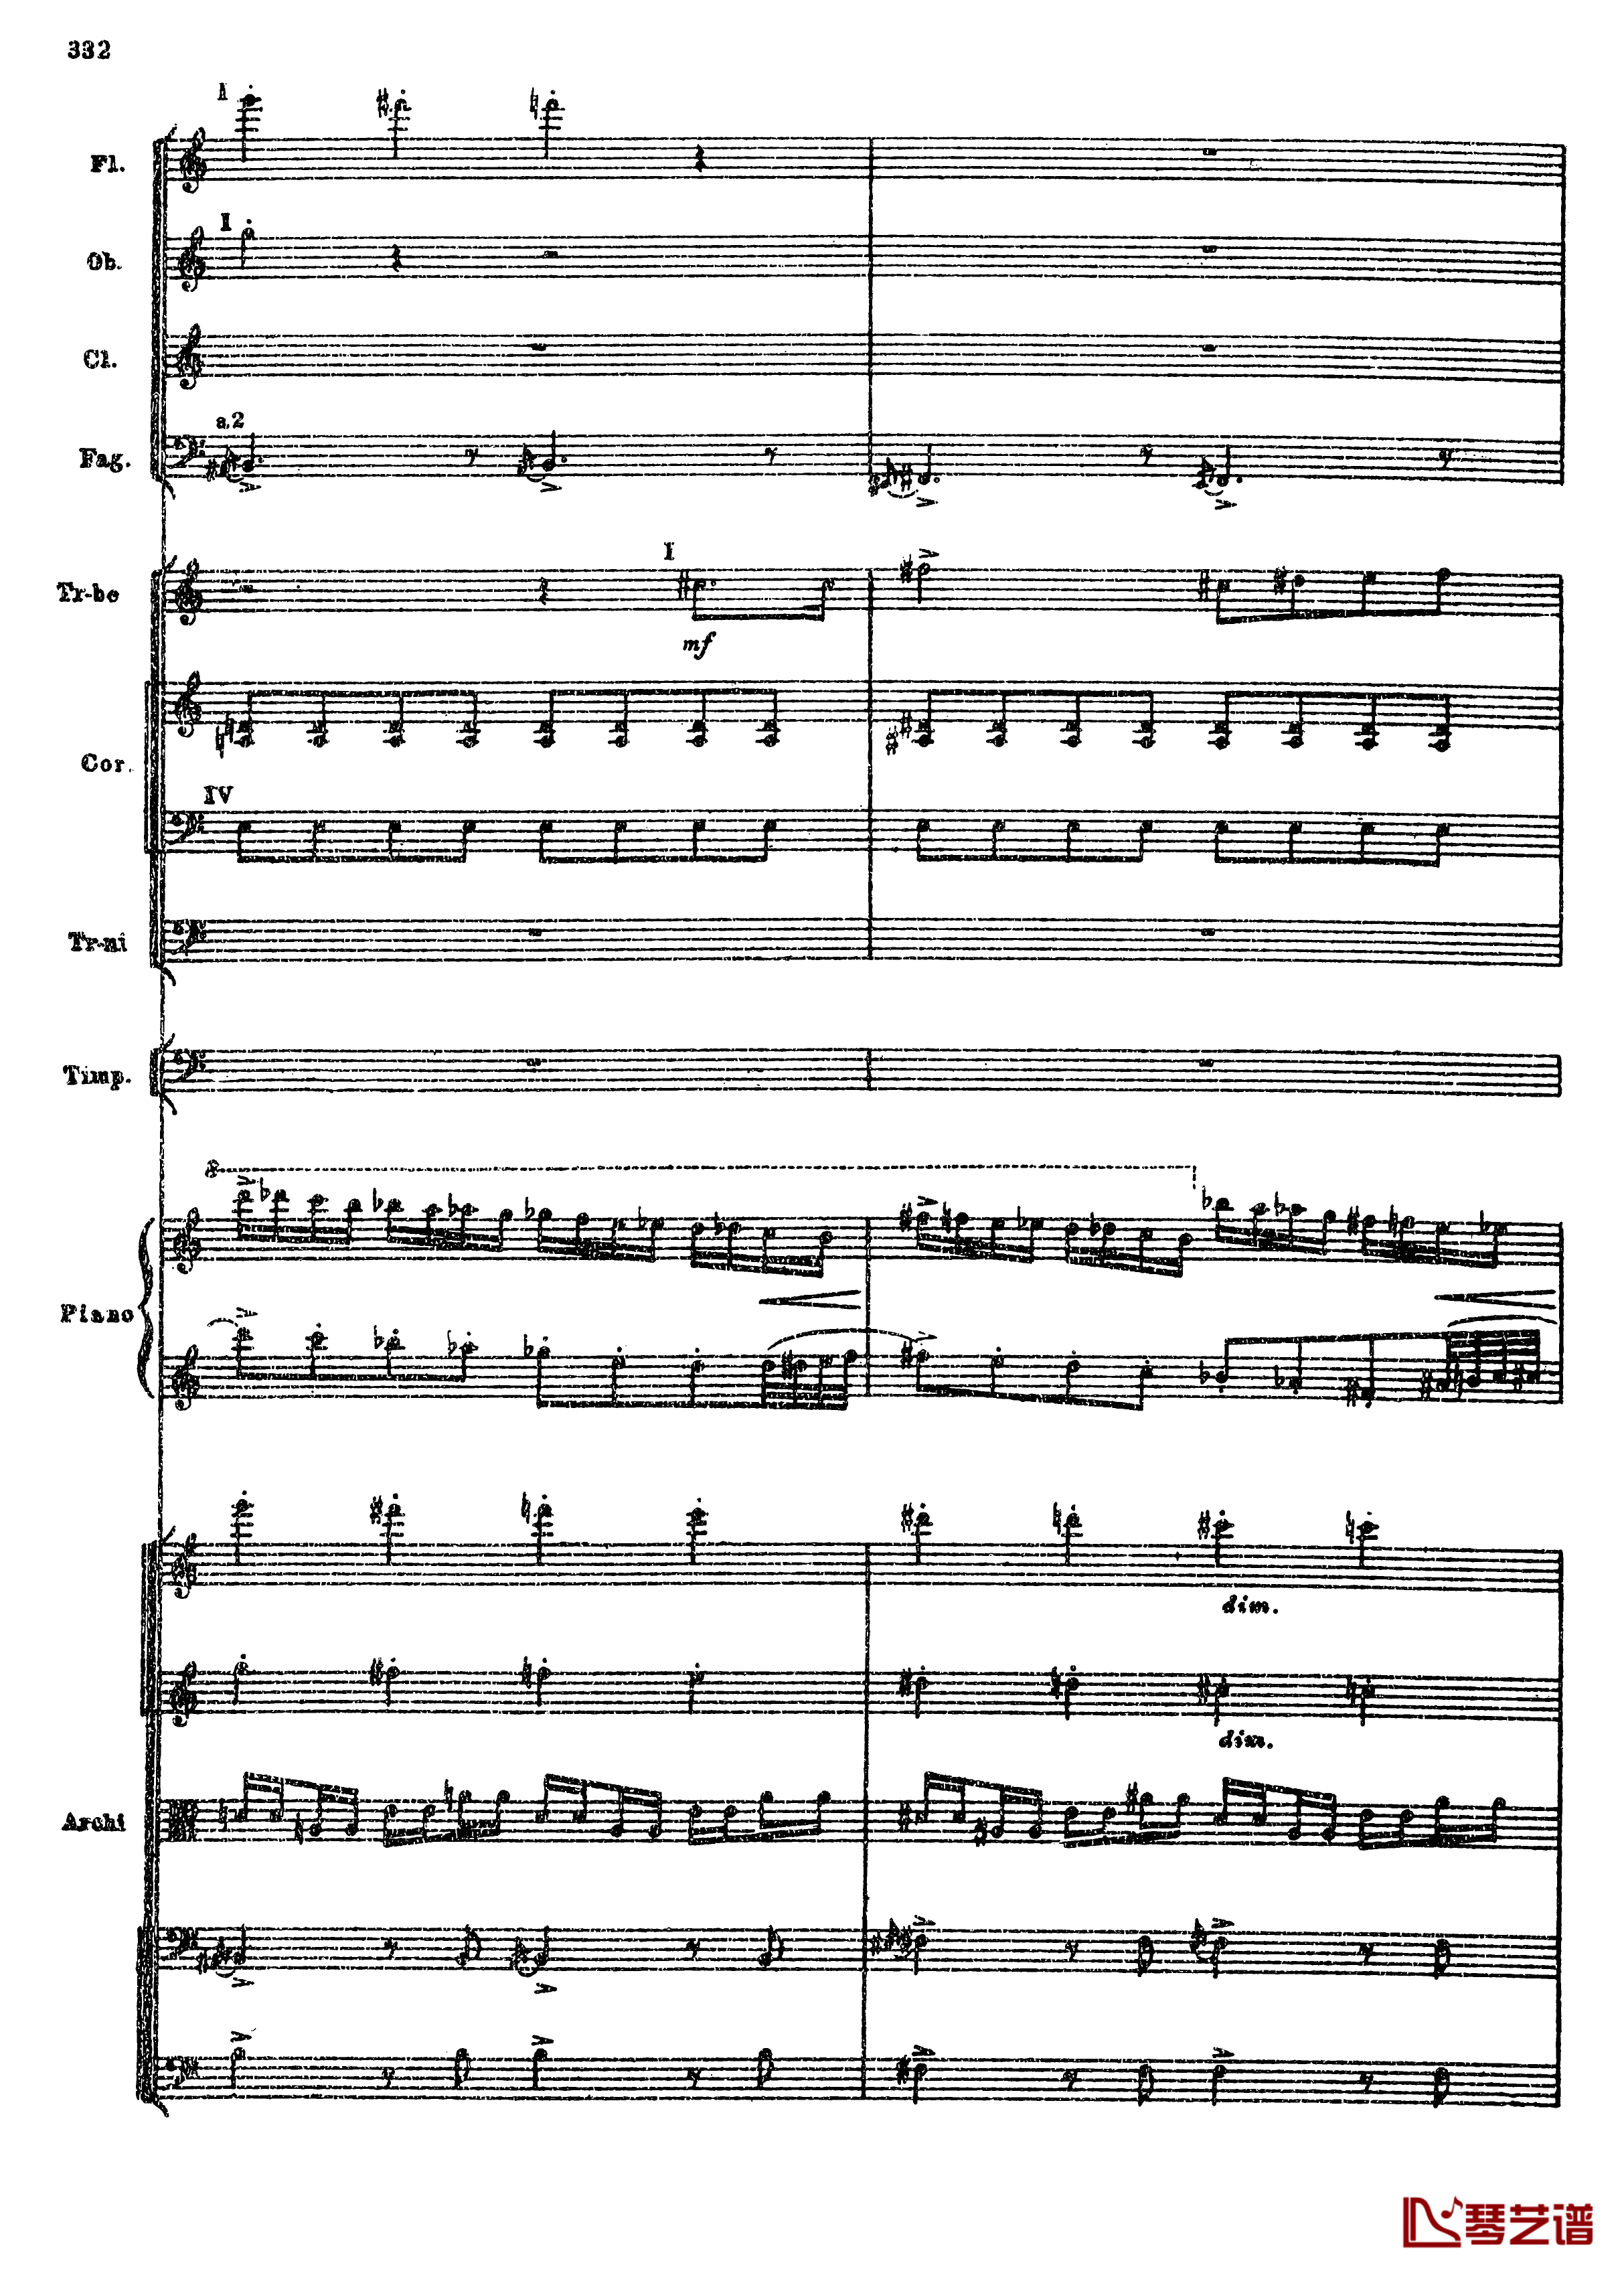 普罗科菲耶夫第三钢琴协奏曲钢琴谱-总谱-普罗科非耶夫64